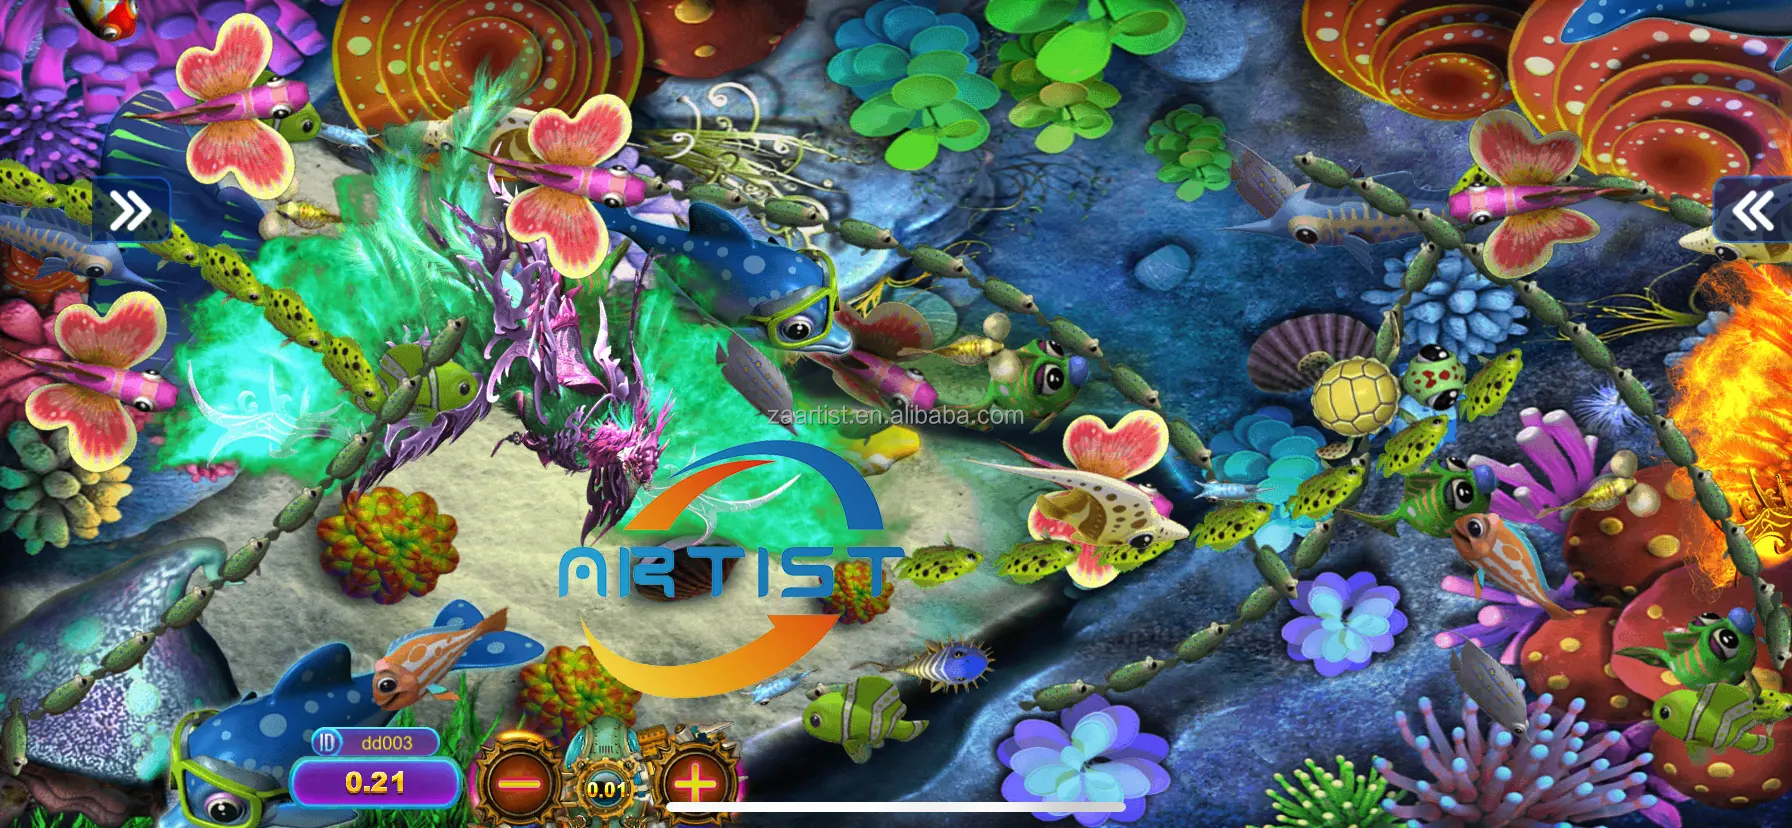 3D видео игровая комната Вегас клуб подметает Orion Power Stars Fire Link благородная Рыбная игра онлайн играть в любое время в любом месте онлайн-приложение игры